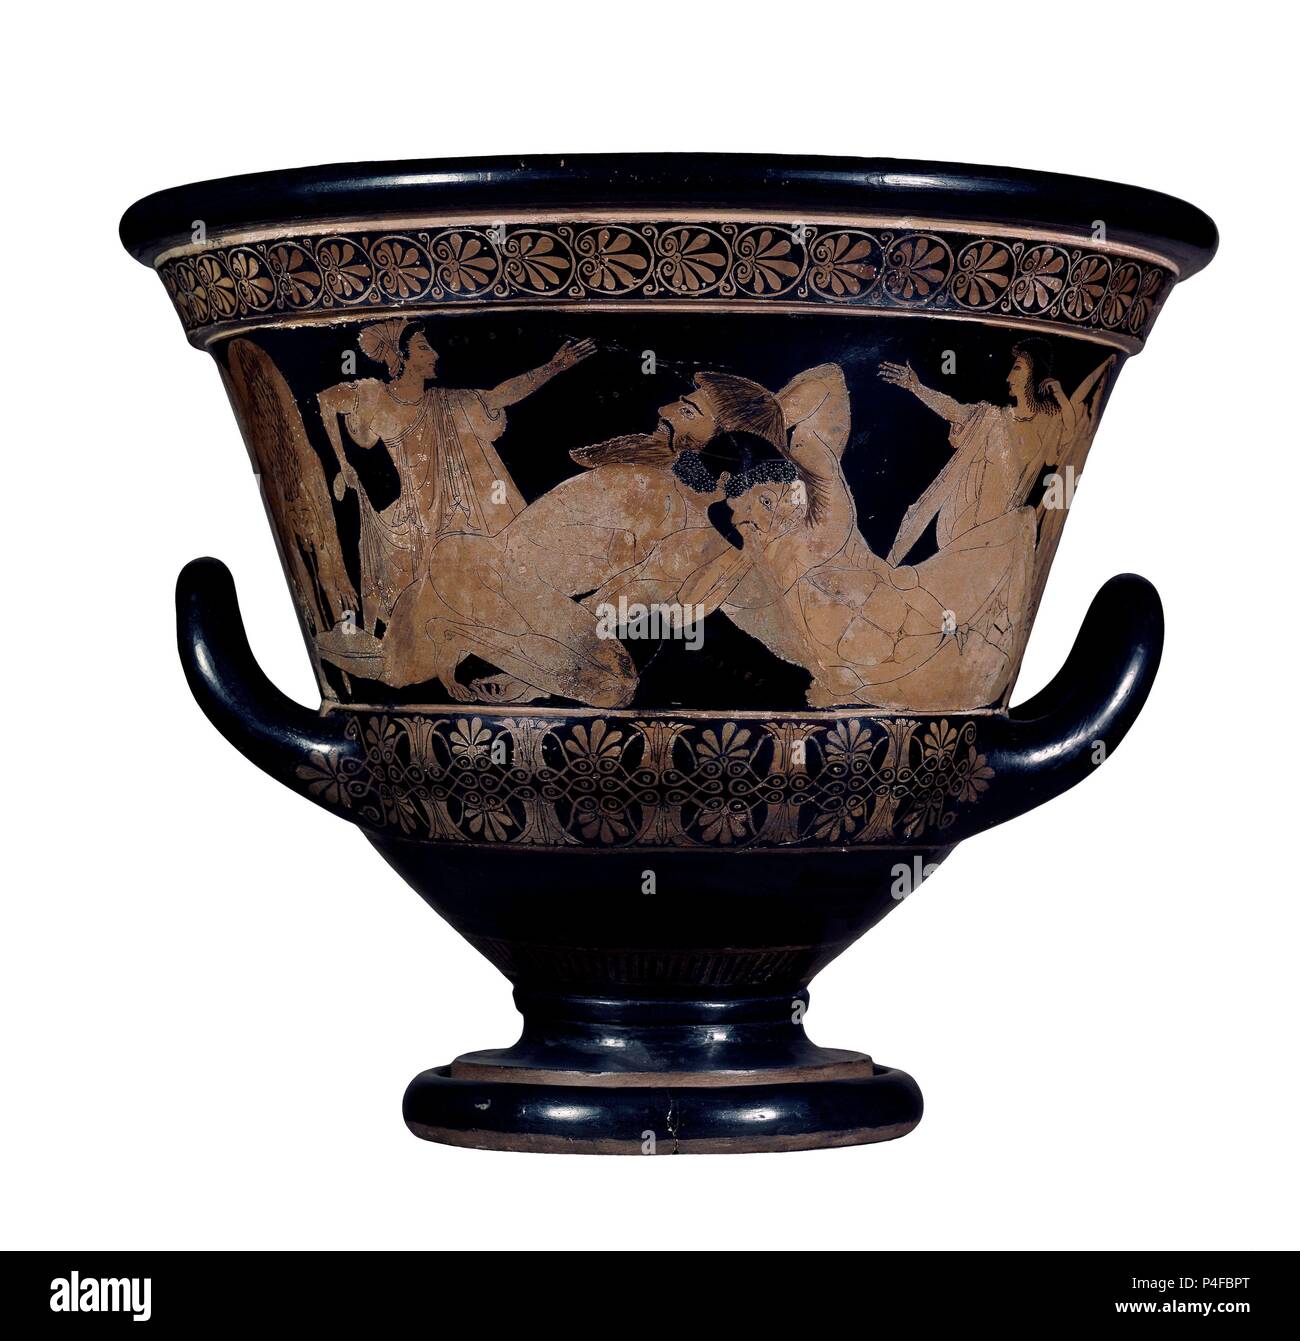 CRATERA DE FIGURAS TRICOLORES - COMBATE DE HERCULES Y ANTEO. Autore: Euphronius (6th-5th cent.). Posizione: MUSEO DEL LOUVRE-ceramica, Francia. Foto Stock